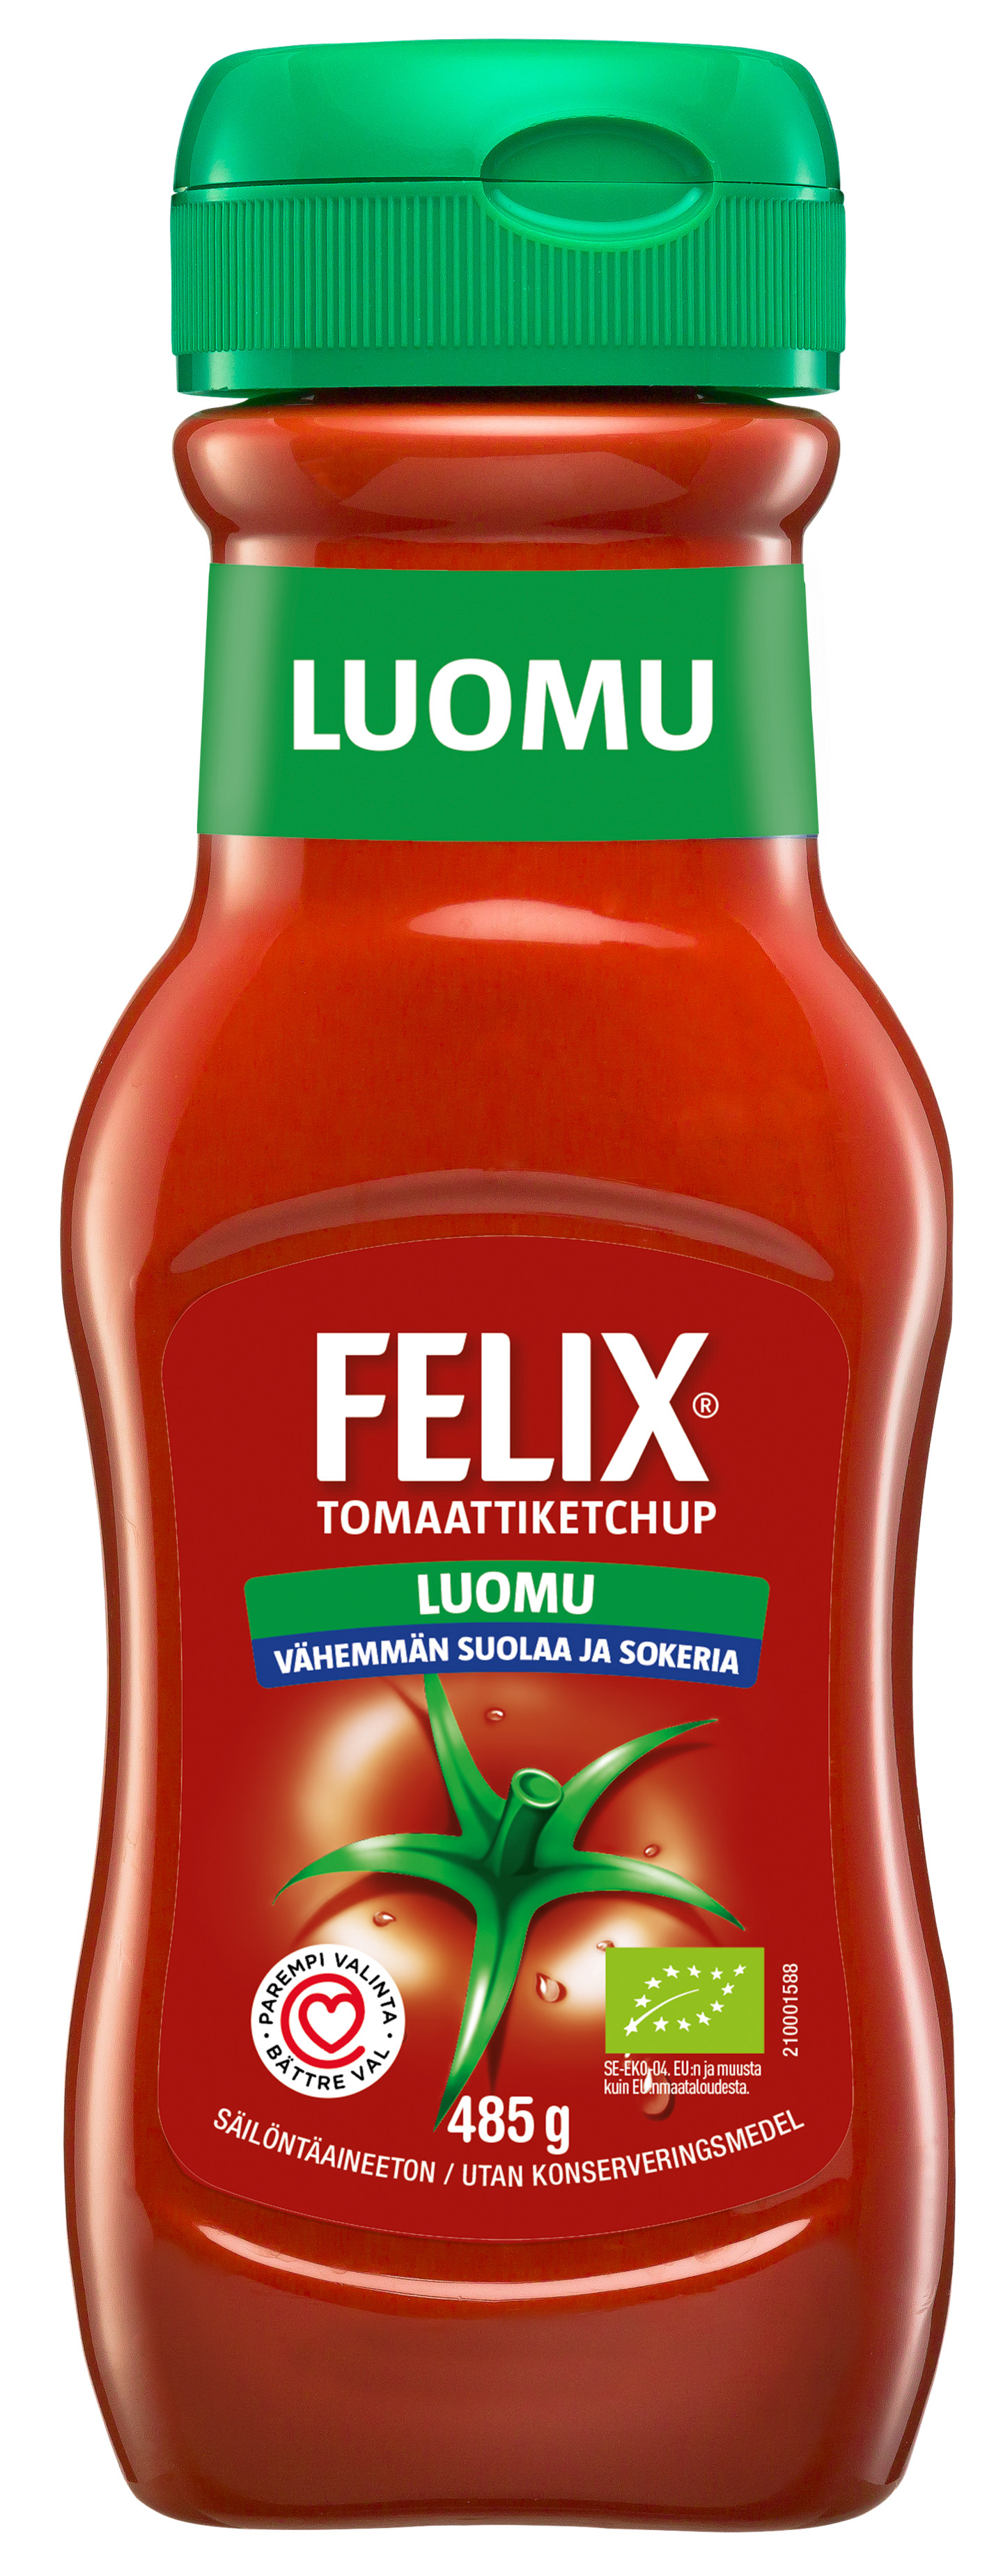 Felix ketchup 485g vähemmän suolaa ja sokeria luomu